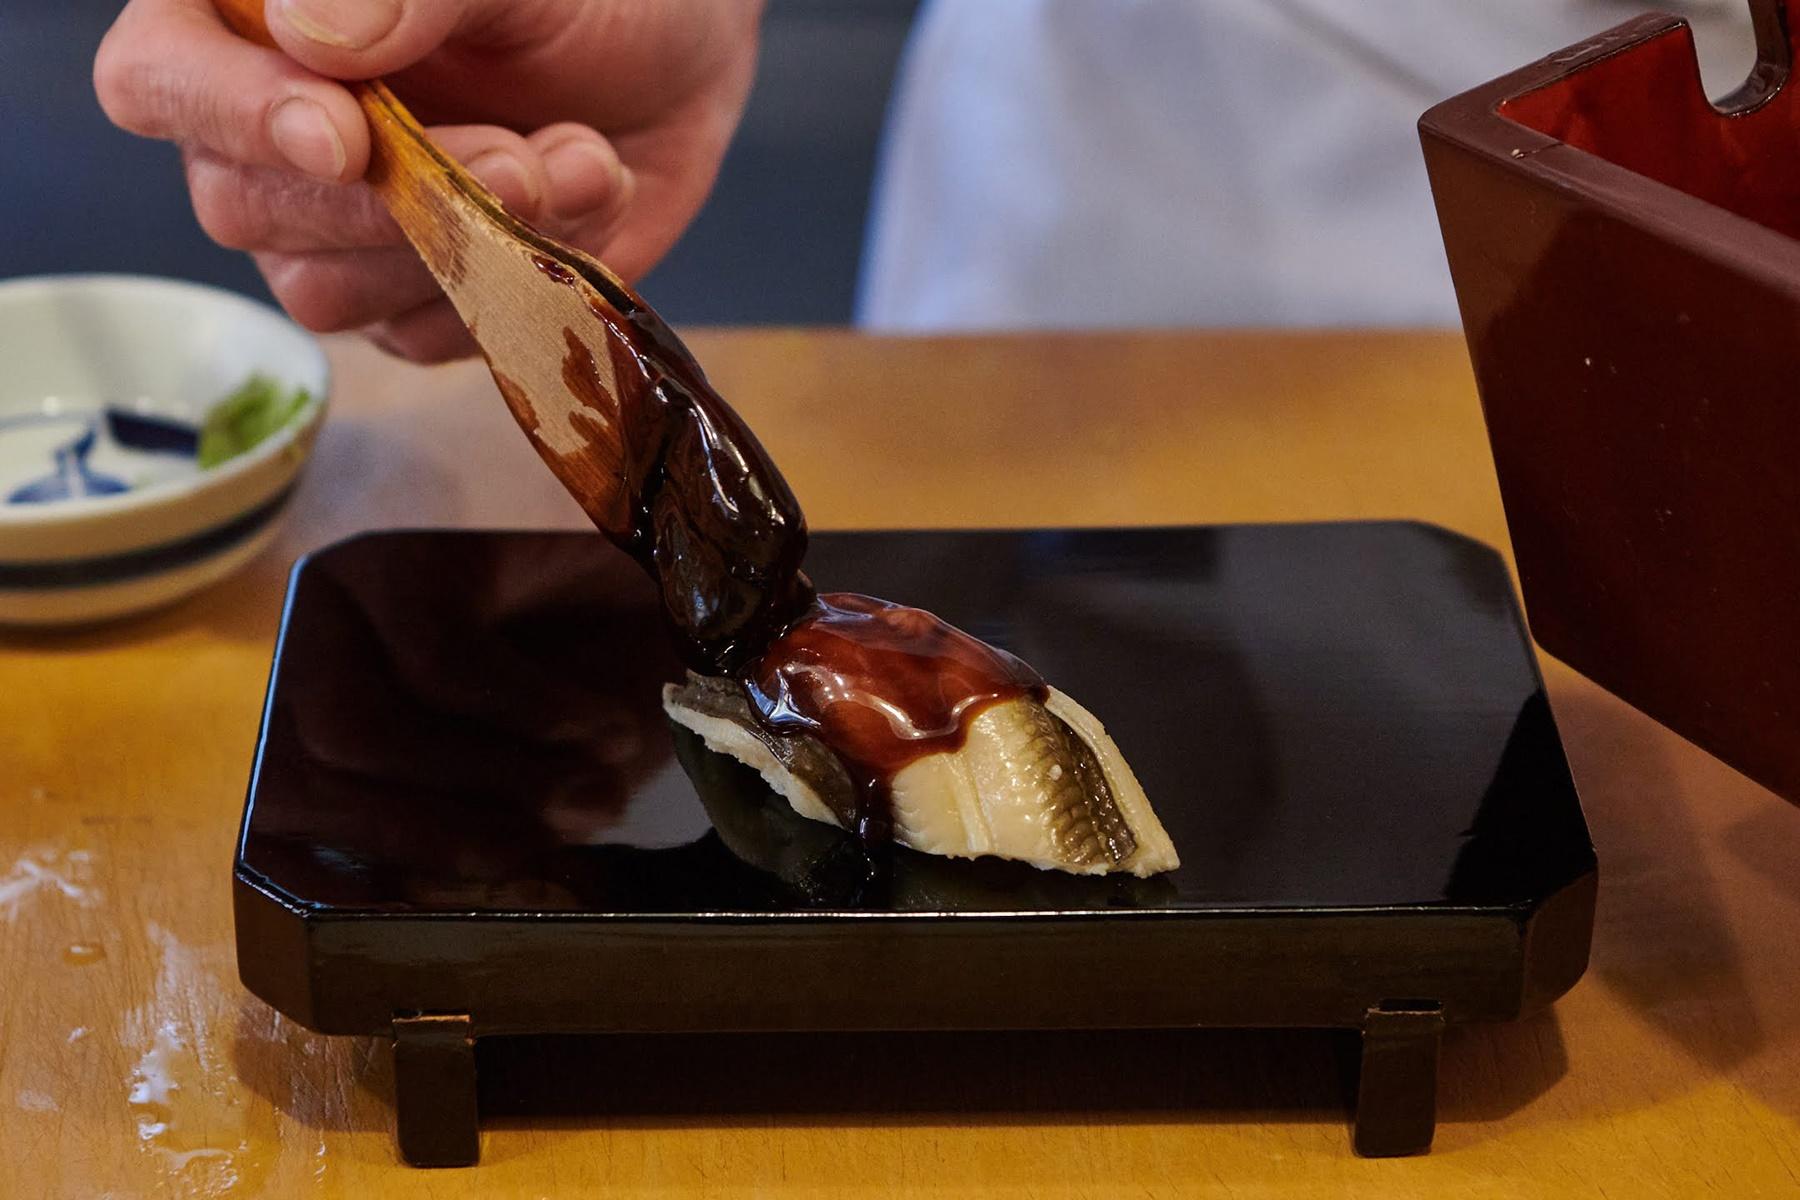 㐂寿司 の穴子で口福極まる 㐂寿司 の365日 公式 Dancyu ダンチュウ